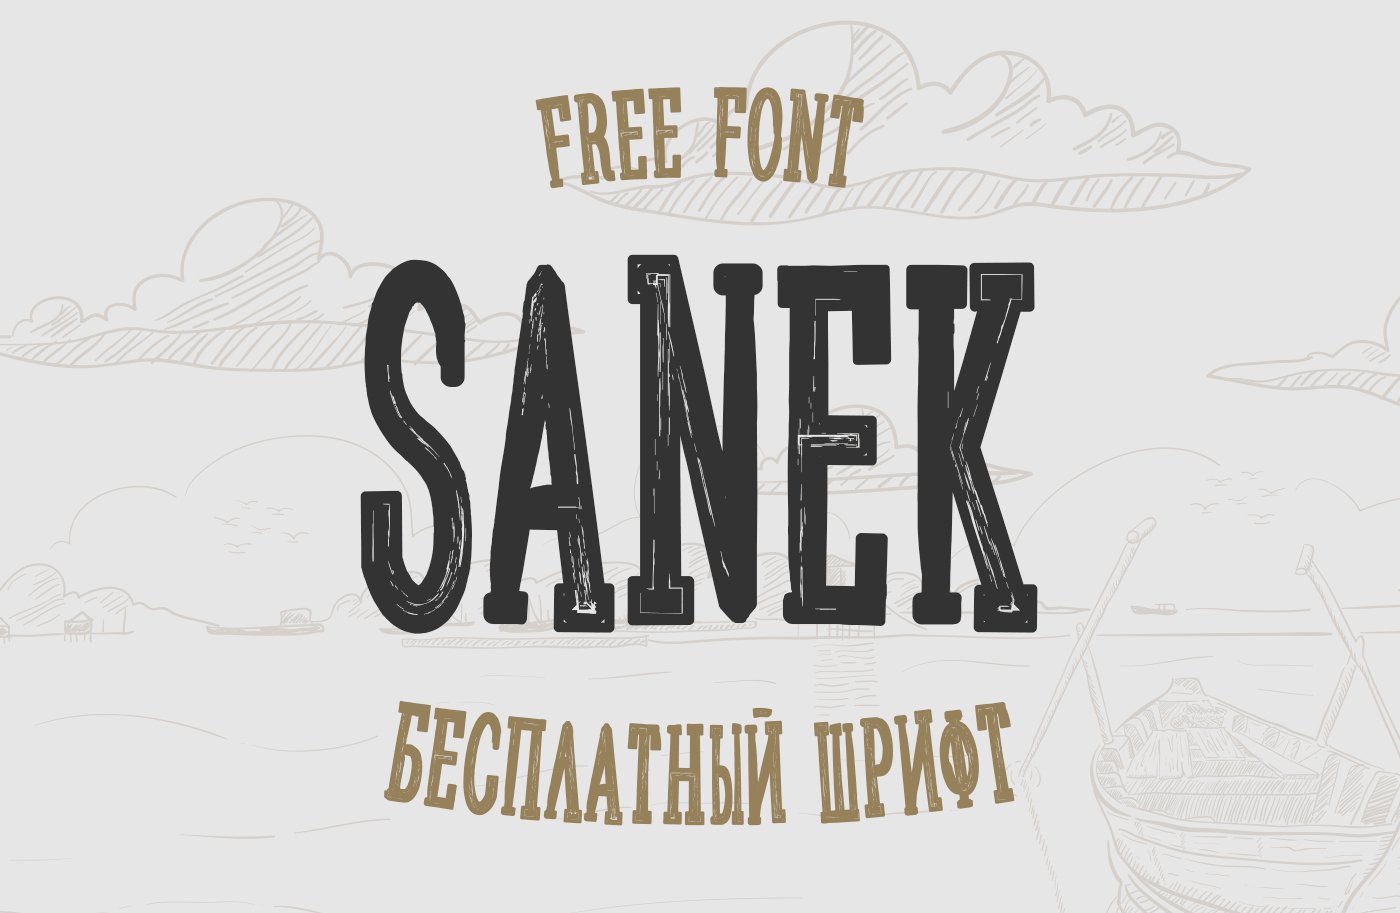 Free Font Sanek Cyrillic скачать бесплатно